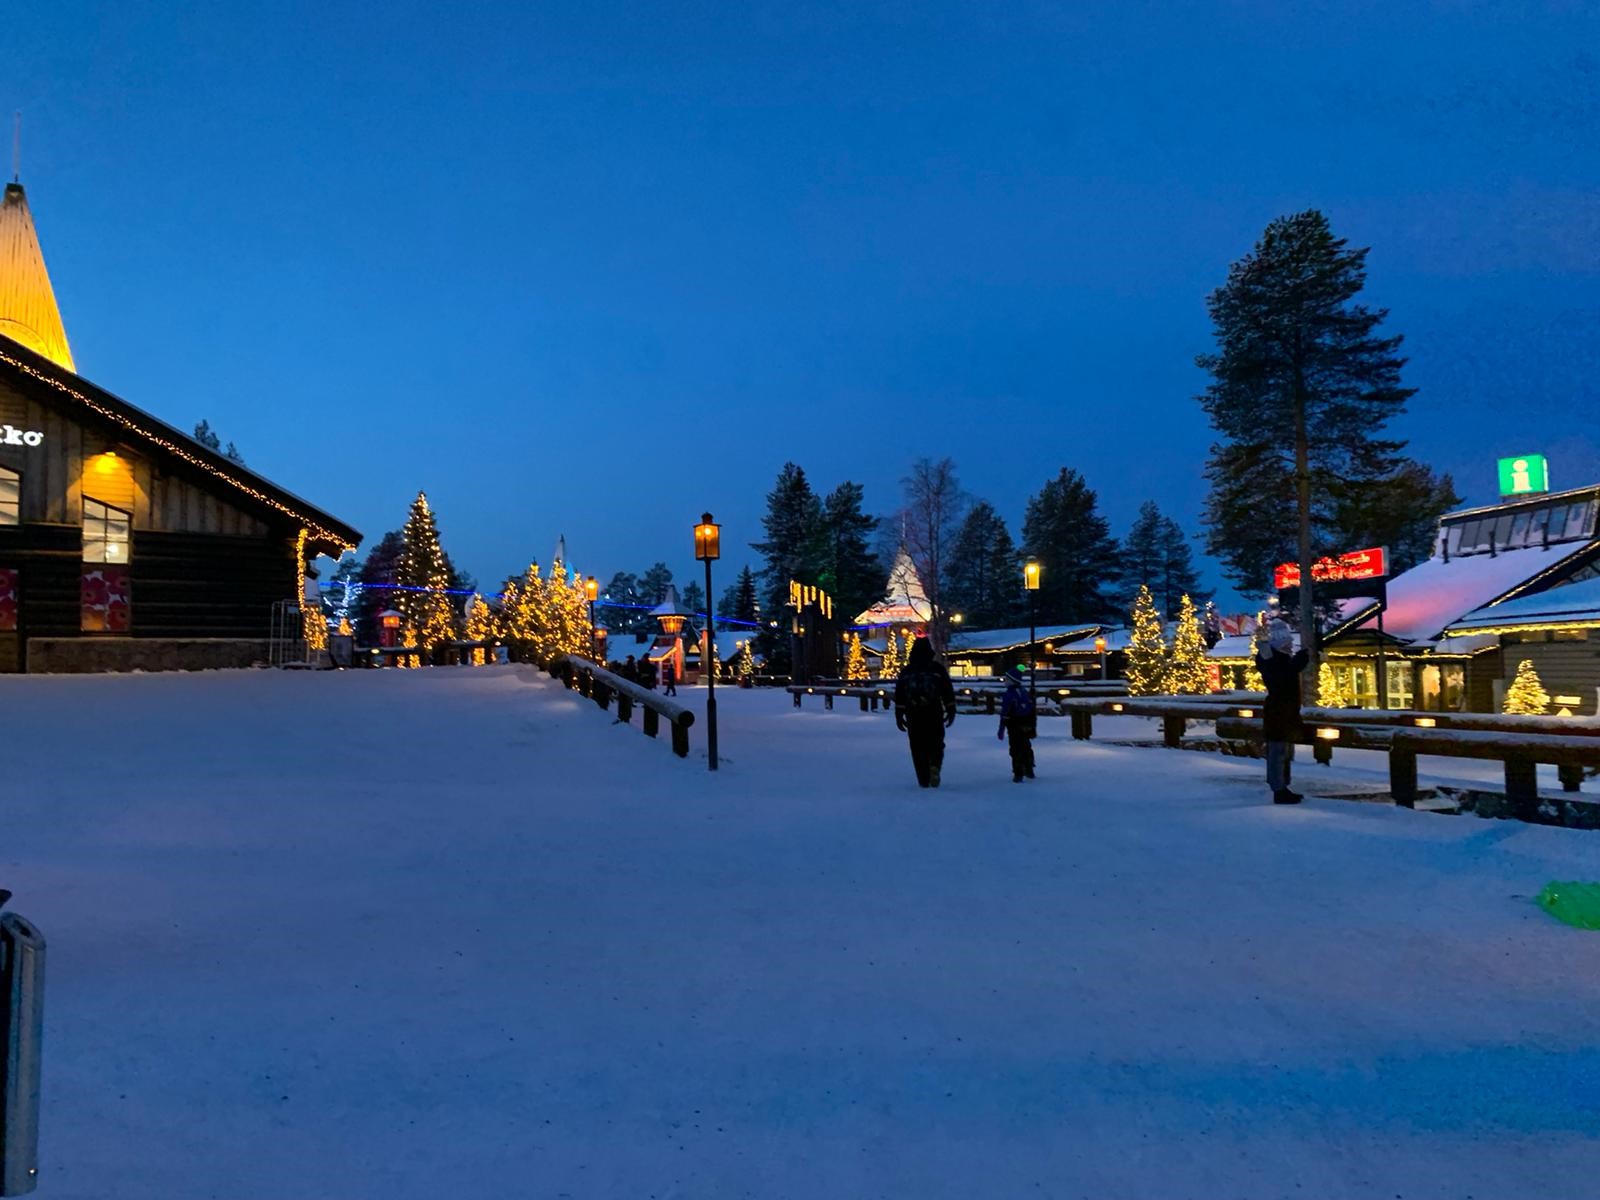 Lorraine Lapland Blog- snow scene in Lapland